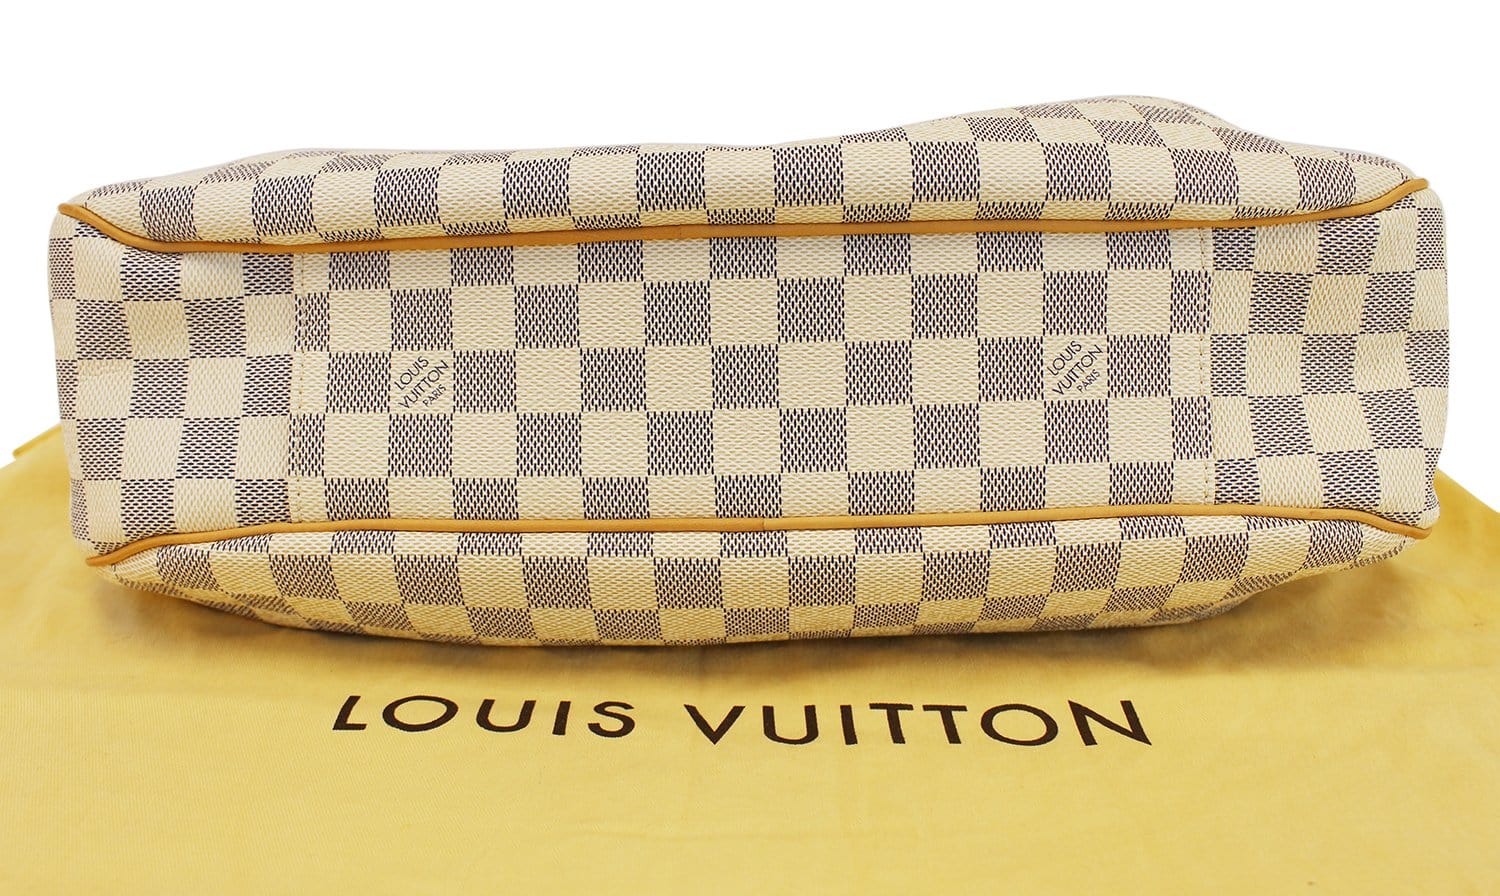 NEW AUTHENTIC Louis Vuitton - Evora MM Damier Azur